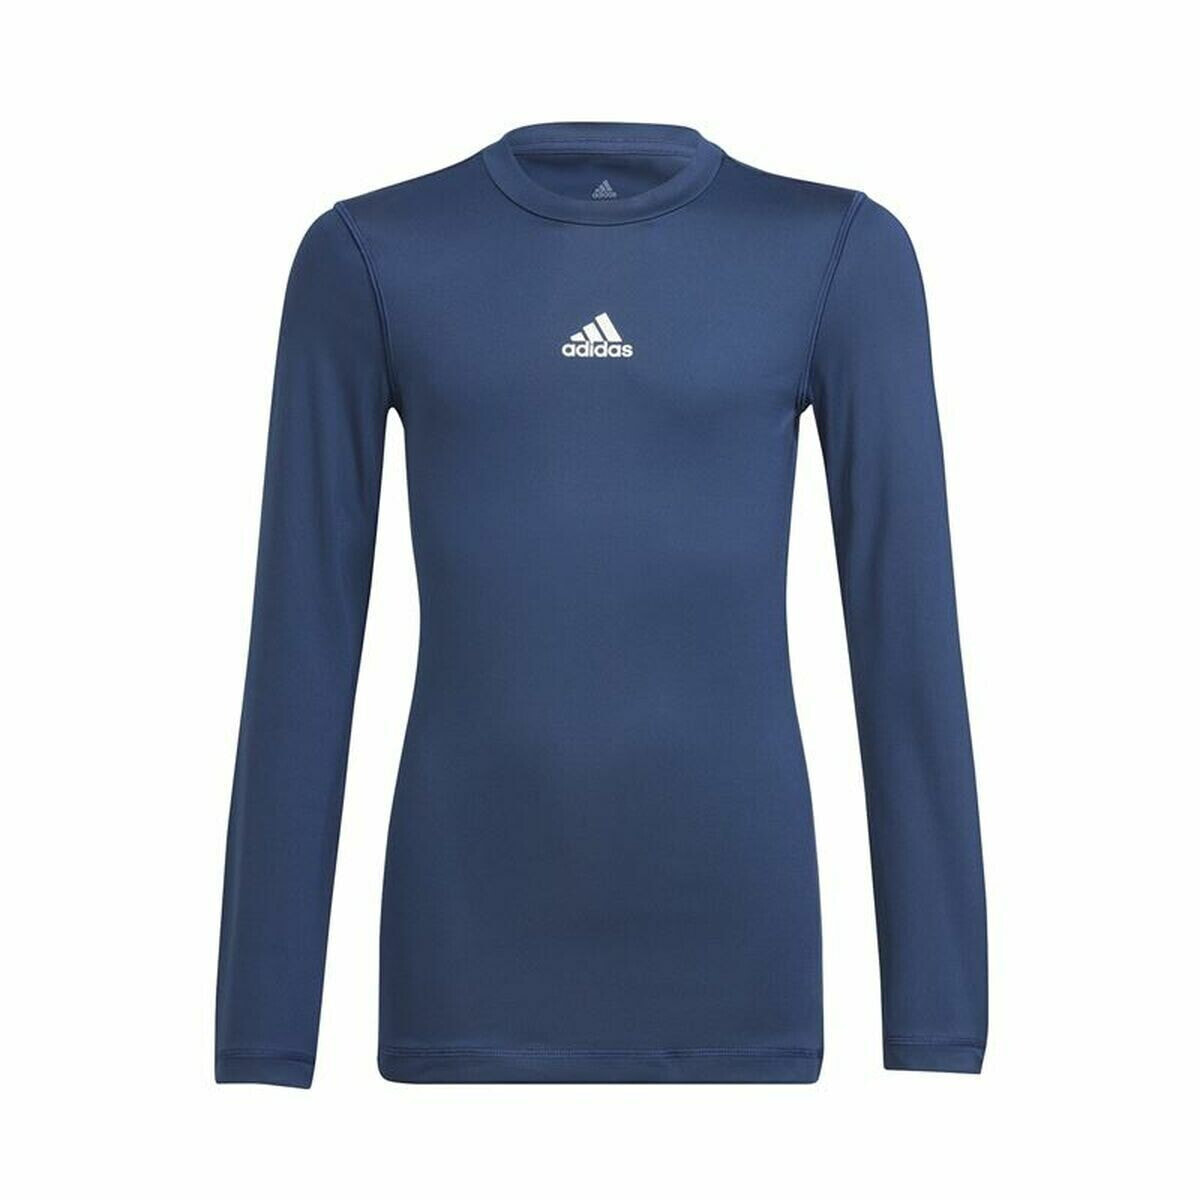 Children's Short Sleeved Football Shirt Adidas Techfit Blue